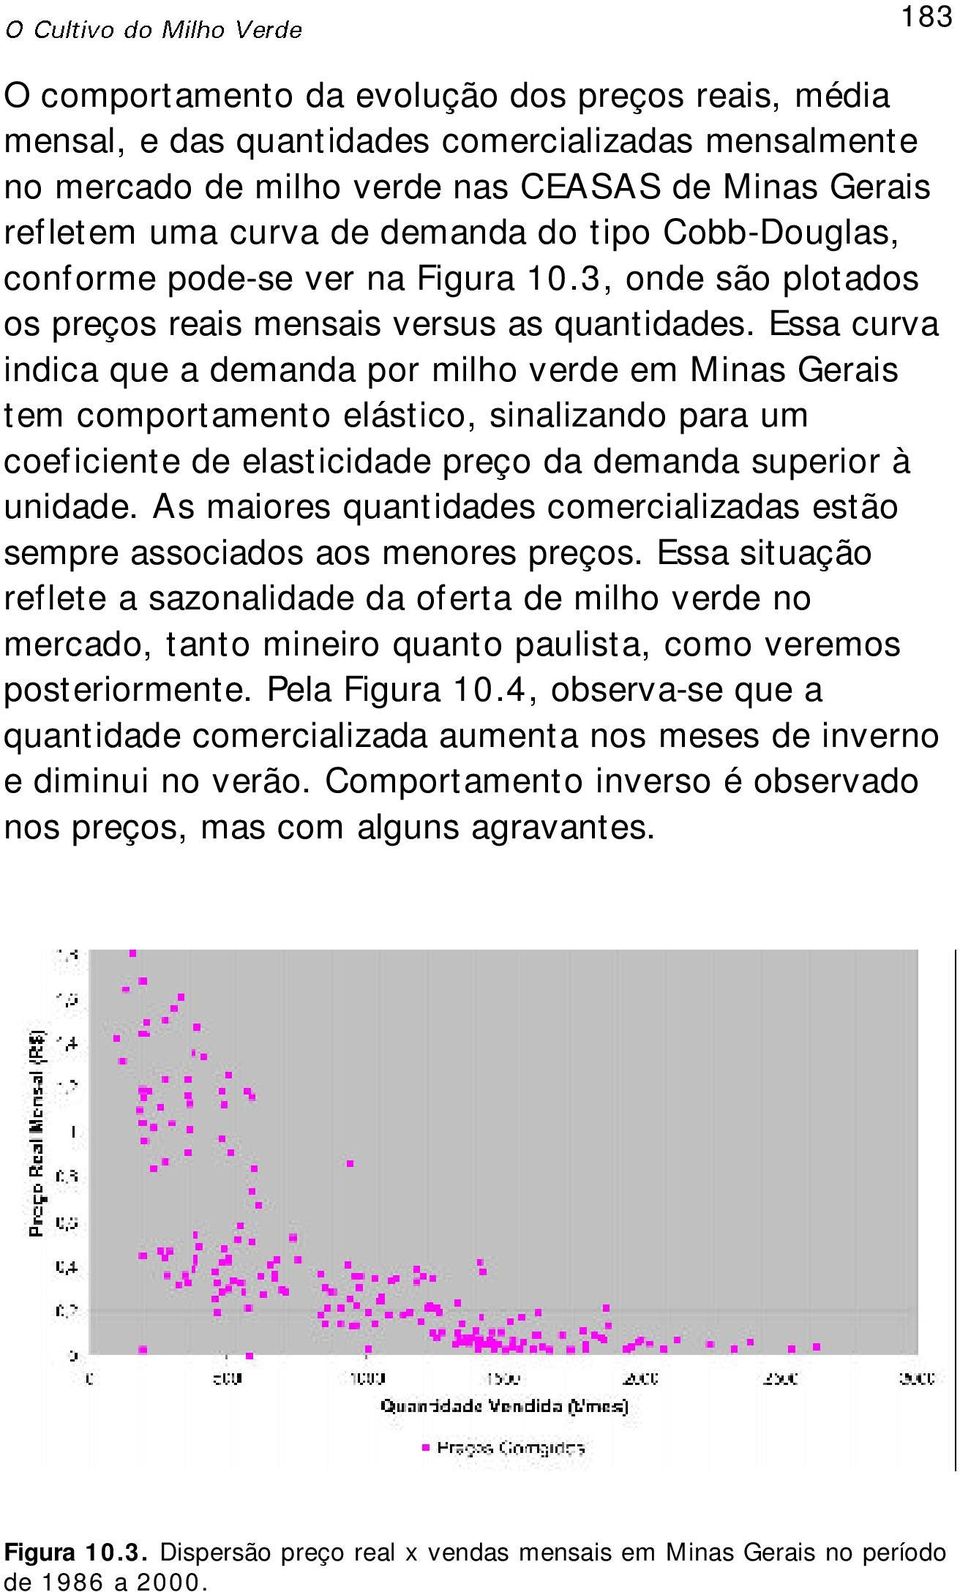 Essa curva indica que a demanda por milho verde em Minas Gerais tem comportamento elástico, sinalizando para um coeficiente de elasticidade preço da demanda superior à unidade.